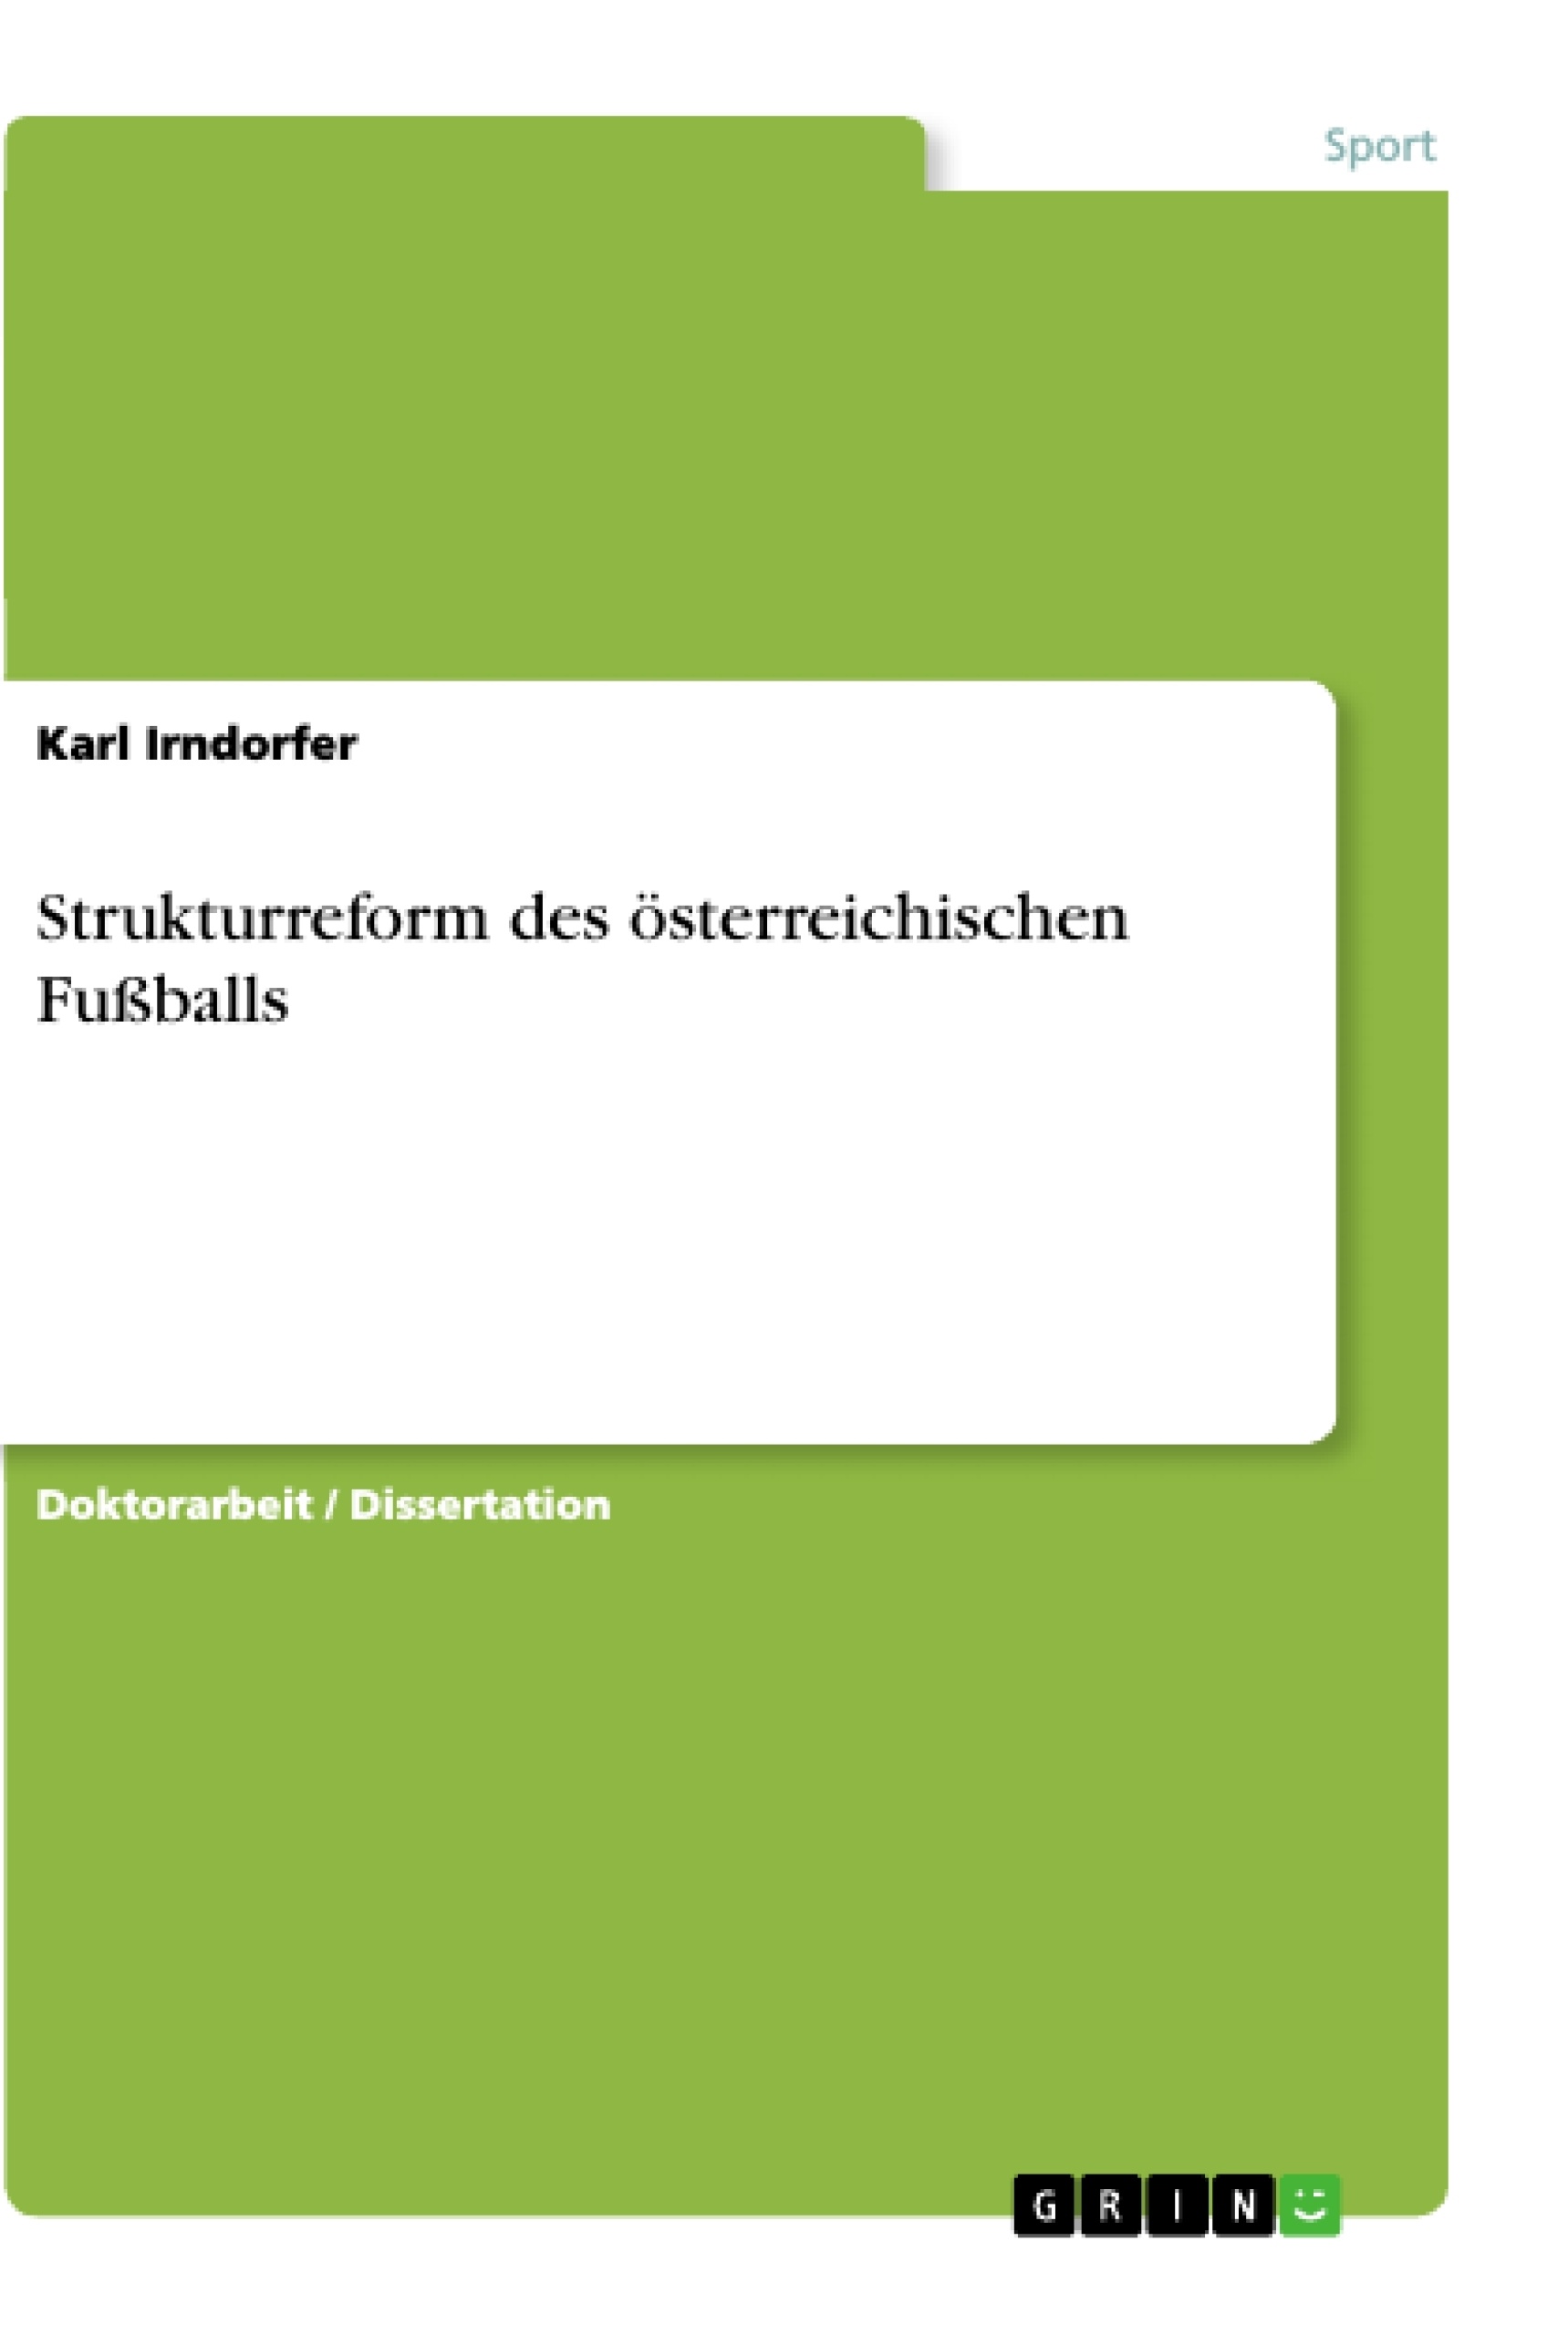 Título: Strukturreform des österreichischen Fußballs